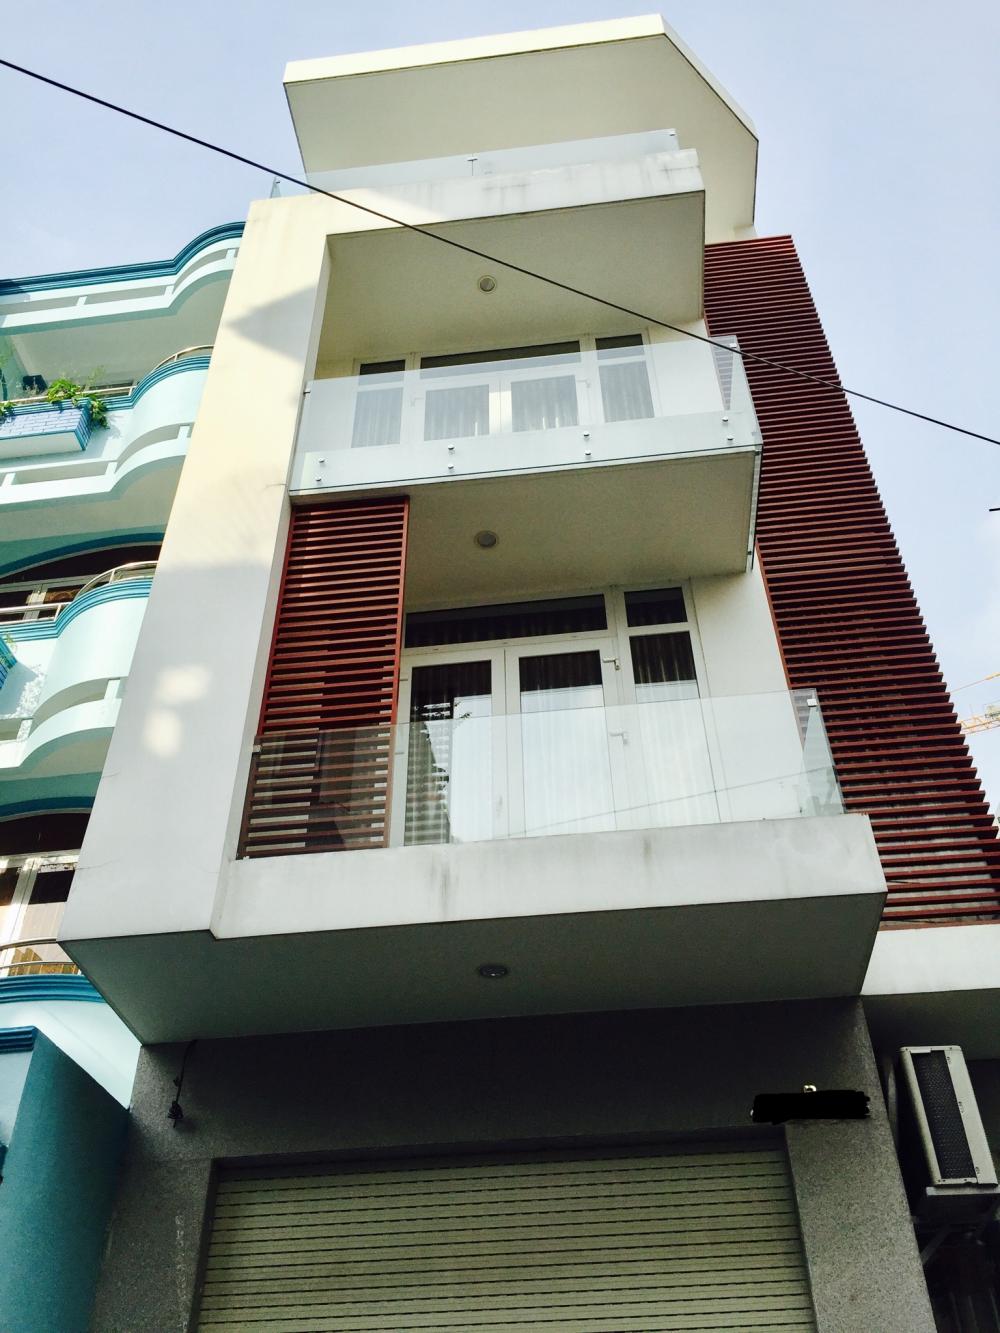  Bán nhà khu biệt thự sang trọng Bàu Bàng– Bình Giã, P13,TB. 4.7x28m, nhà 3 tầng đẹp giá rẻ bất ngờ